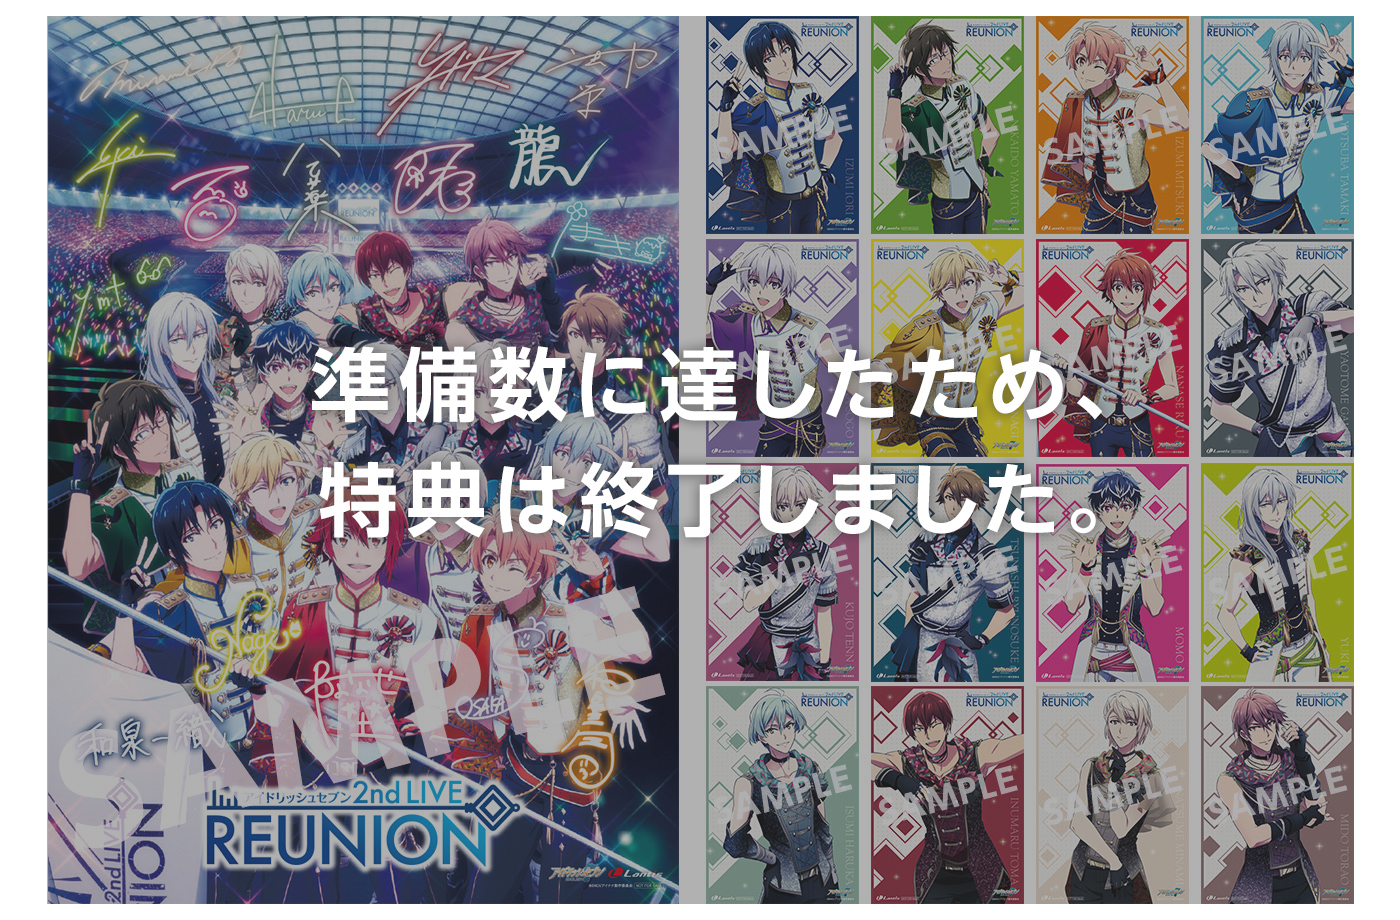 お気に入りの アイドリッシュセブン BOX LIVE「REUNION」Blu-ray 2nd